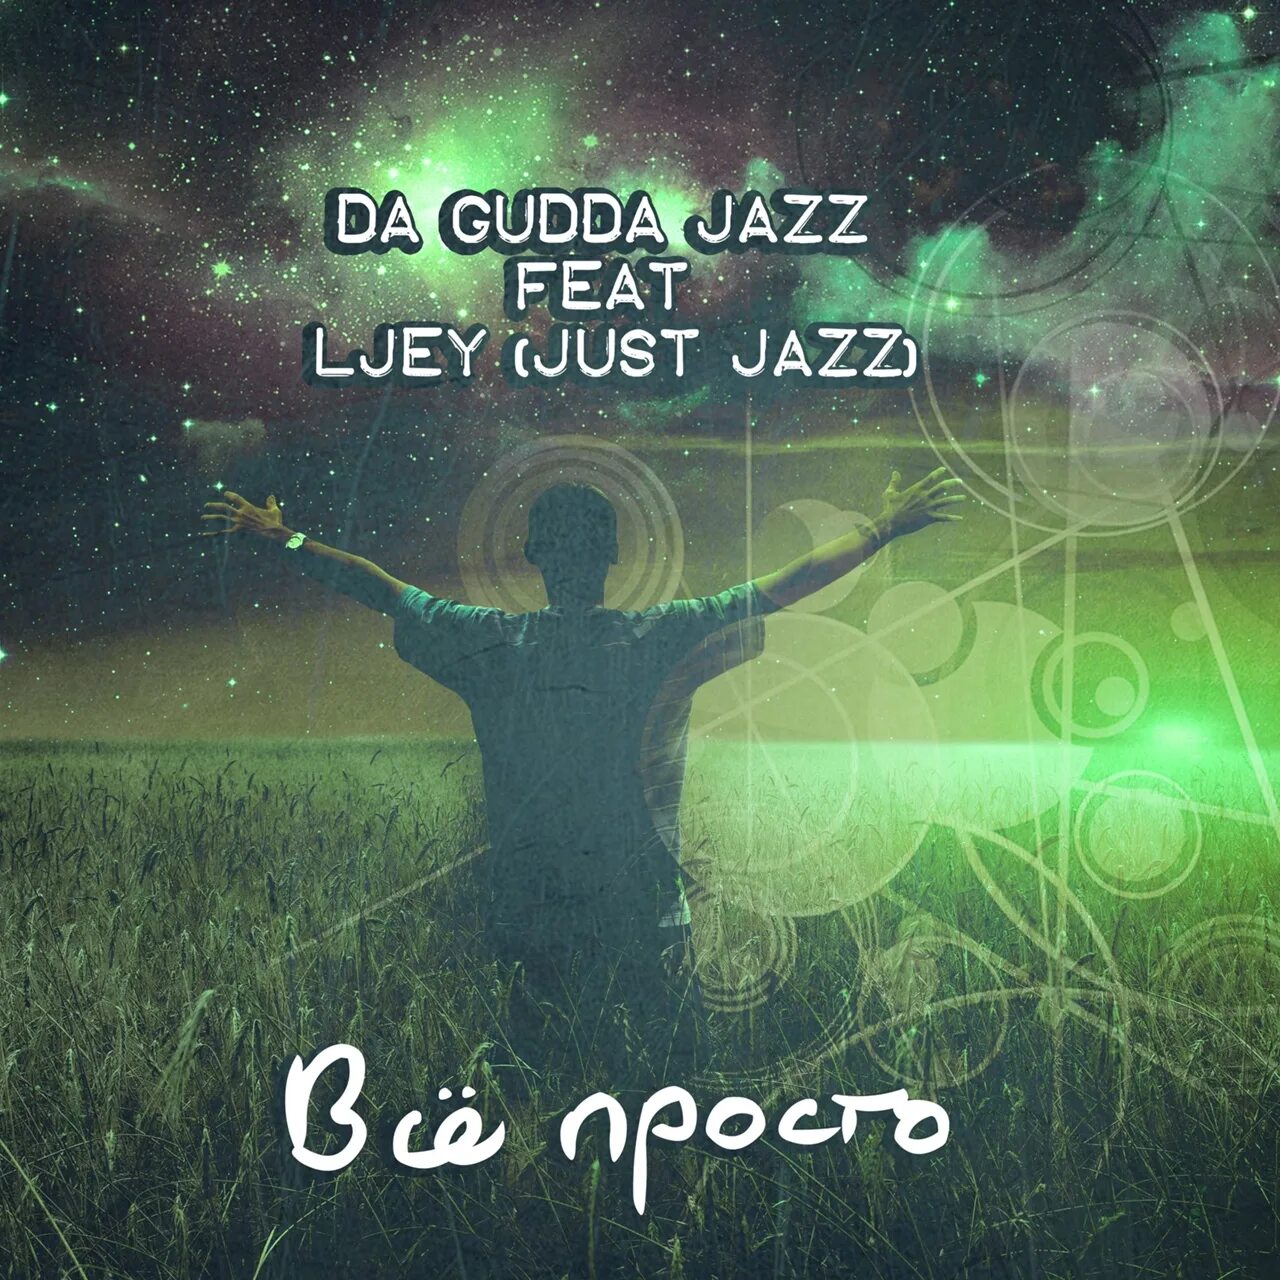 Gudda Jazz. Tanir da Gudda Jazz. Da Gudda Jazz Forgotten. Танир da Gudda Jazz жена.